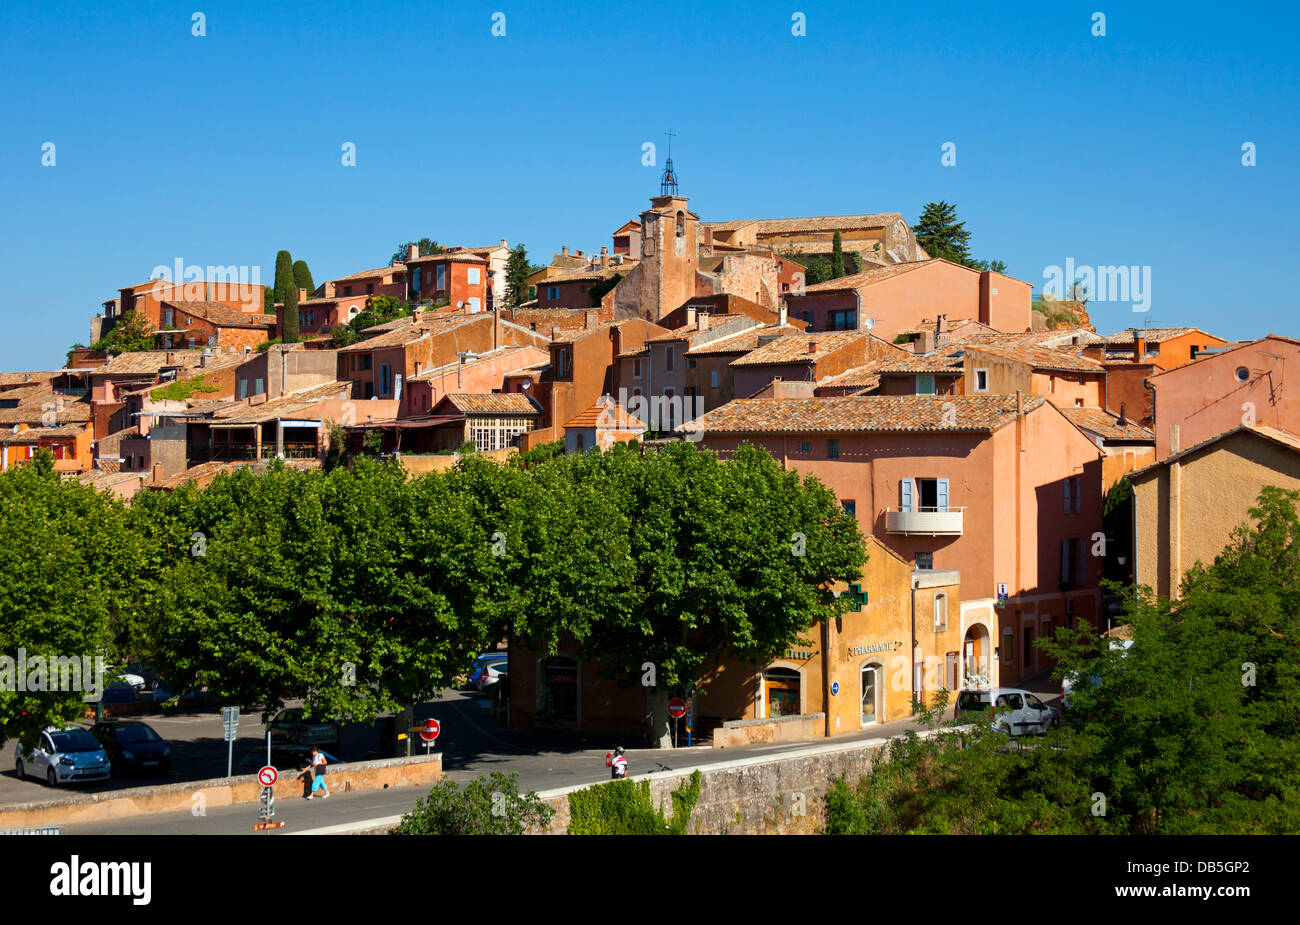 Village de Roussillon, Luberon, Provence, France, Europe Banque D'Images